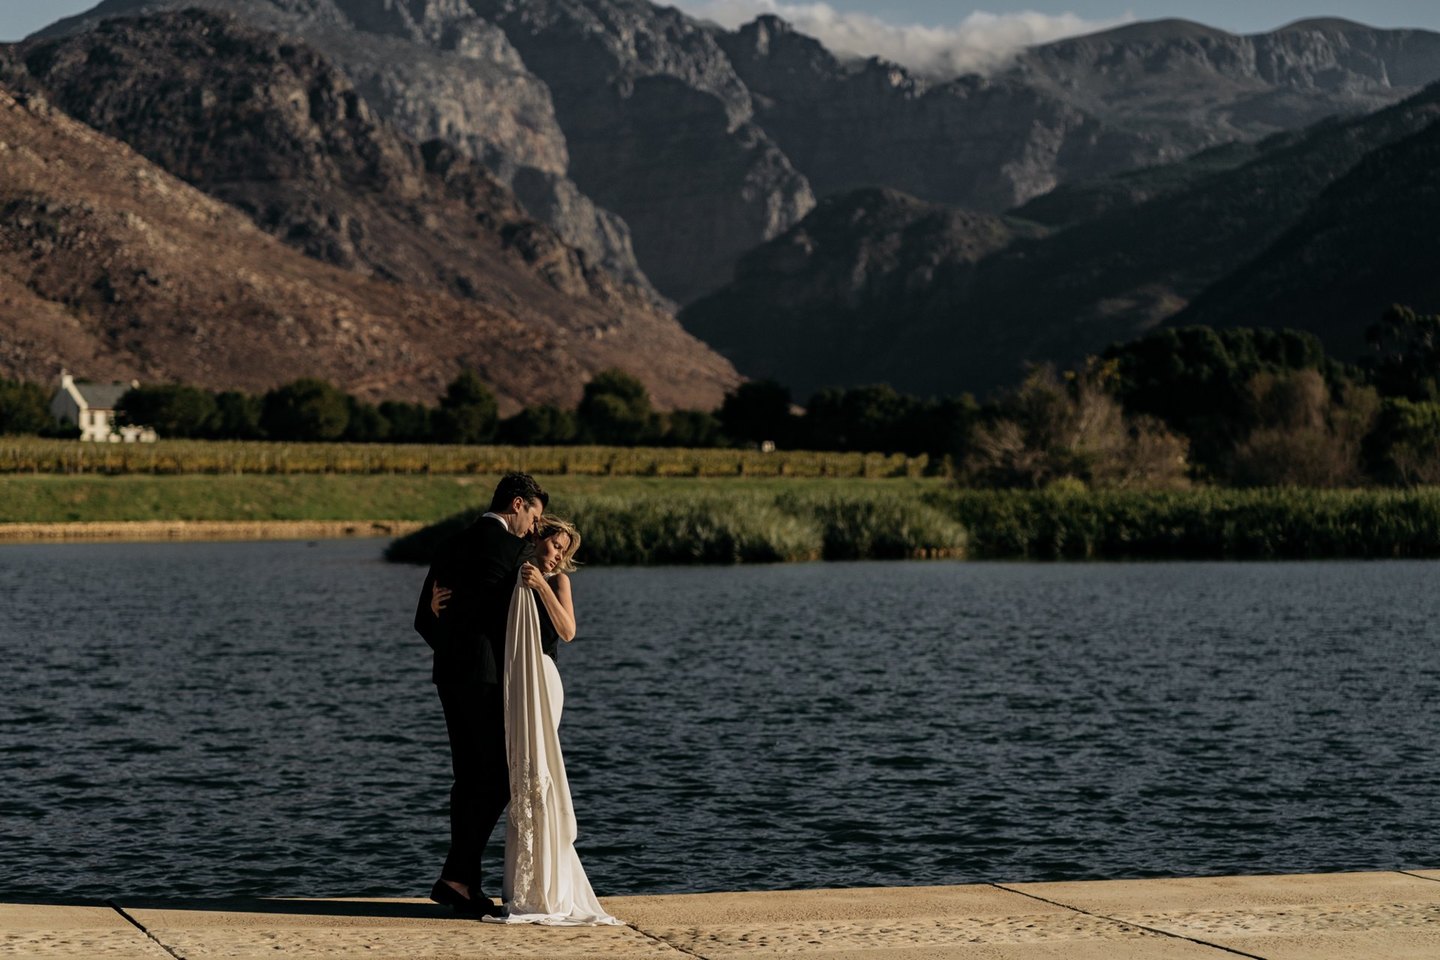 quanto custa um fotógrafo de casamento?